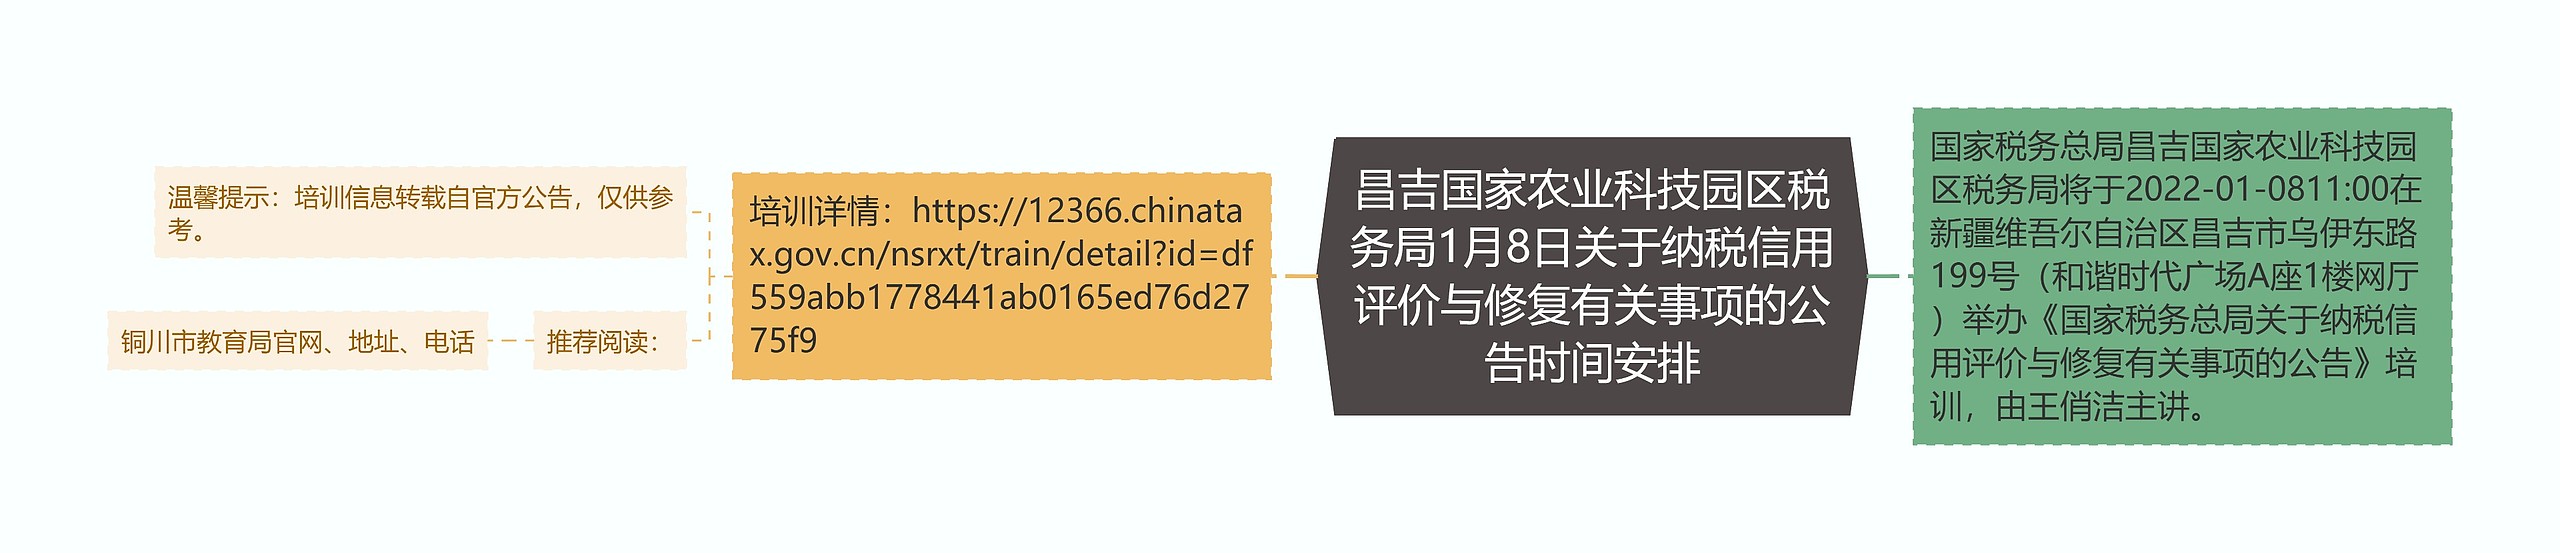 昌吉国家农业科技园区税务局1月8日关于纳税信用评价与修复有关事项的公告时间安排